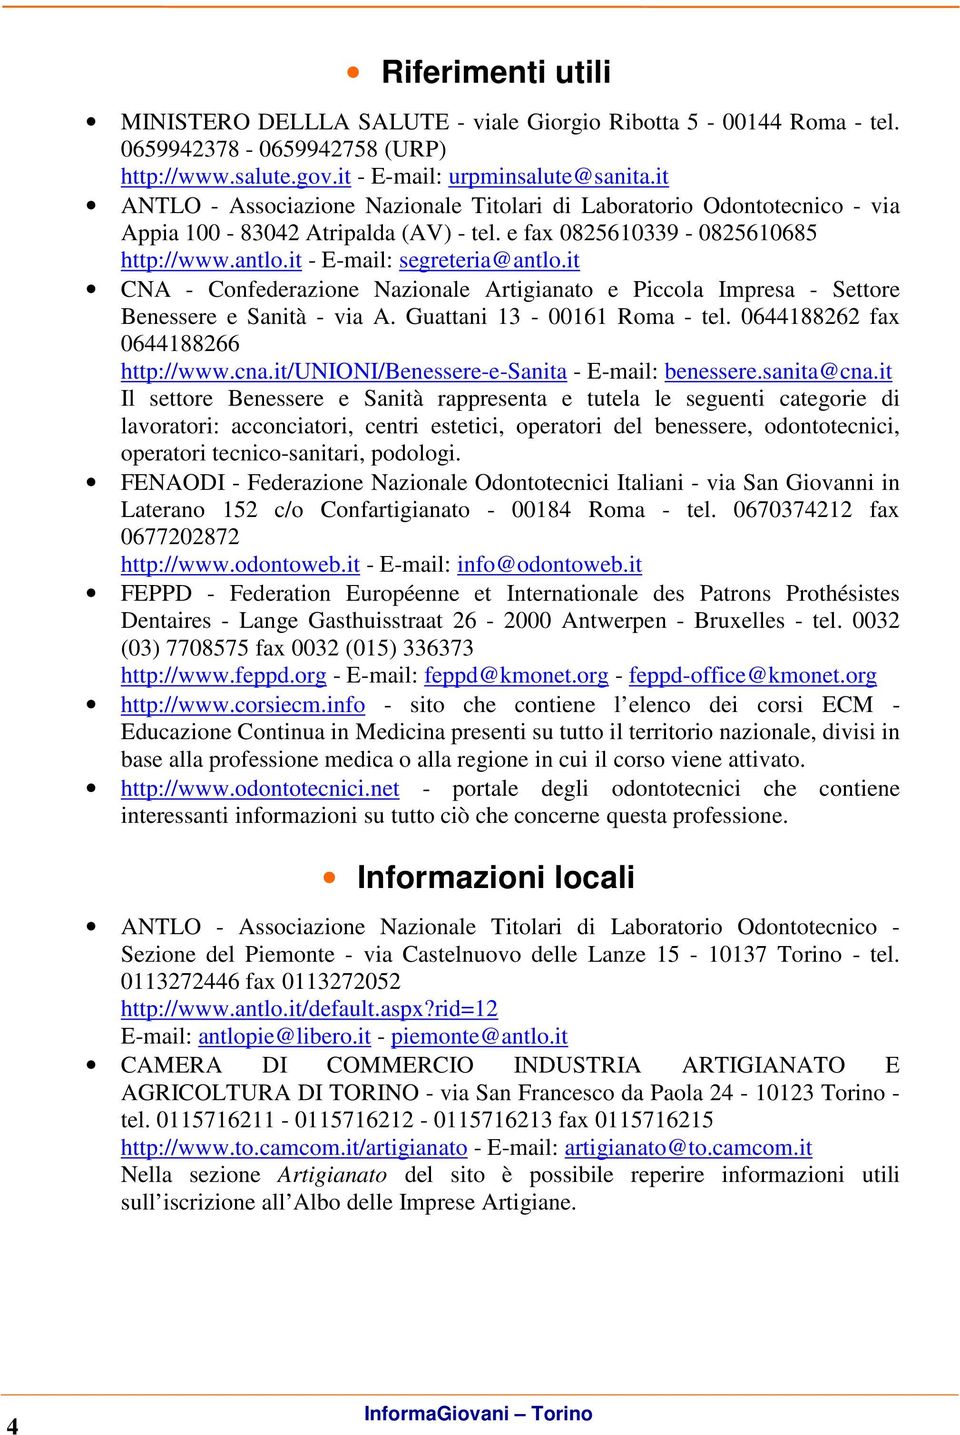 it CNA - Confederazione Nazionale Artigianato e Piccola Impresa - Settore Benessere e Sanità - via A. Guattani 13-00161 Roma - tel. 0644188262 fax 0644188266 http://www.cna.